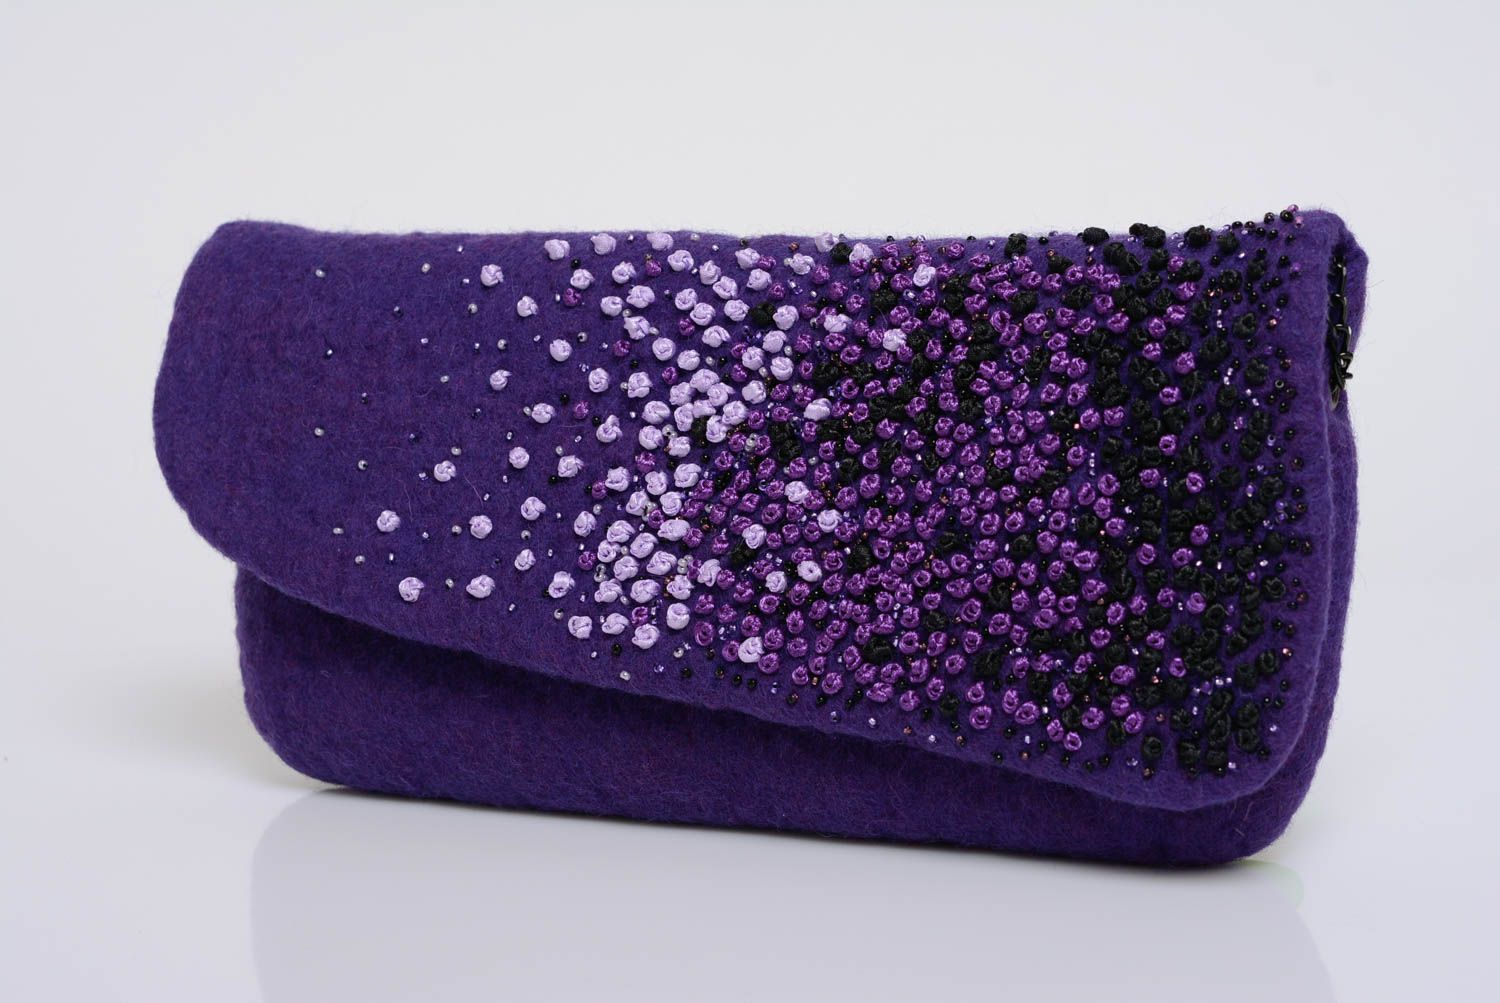 Sac pochette en laine feutrée violet fait main original sur chaîne métallique photo 2